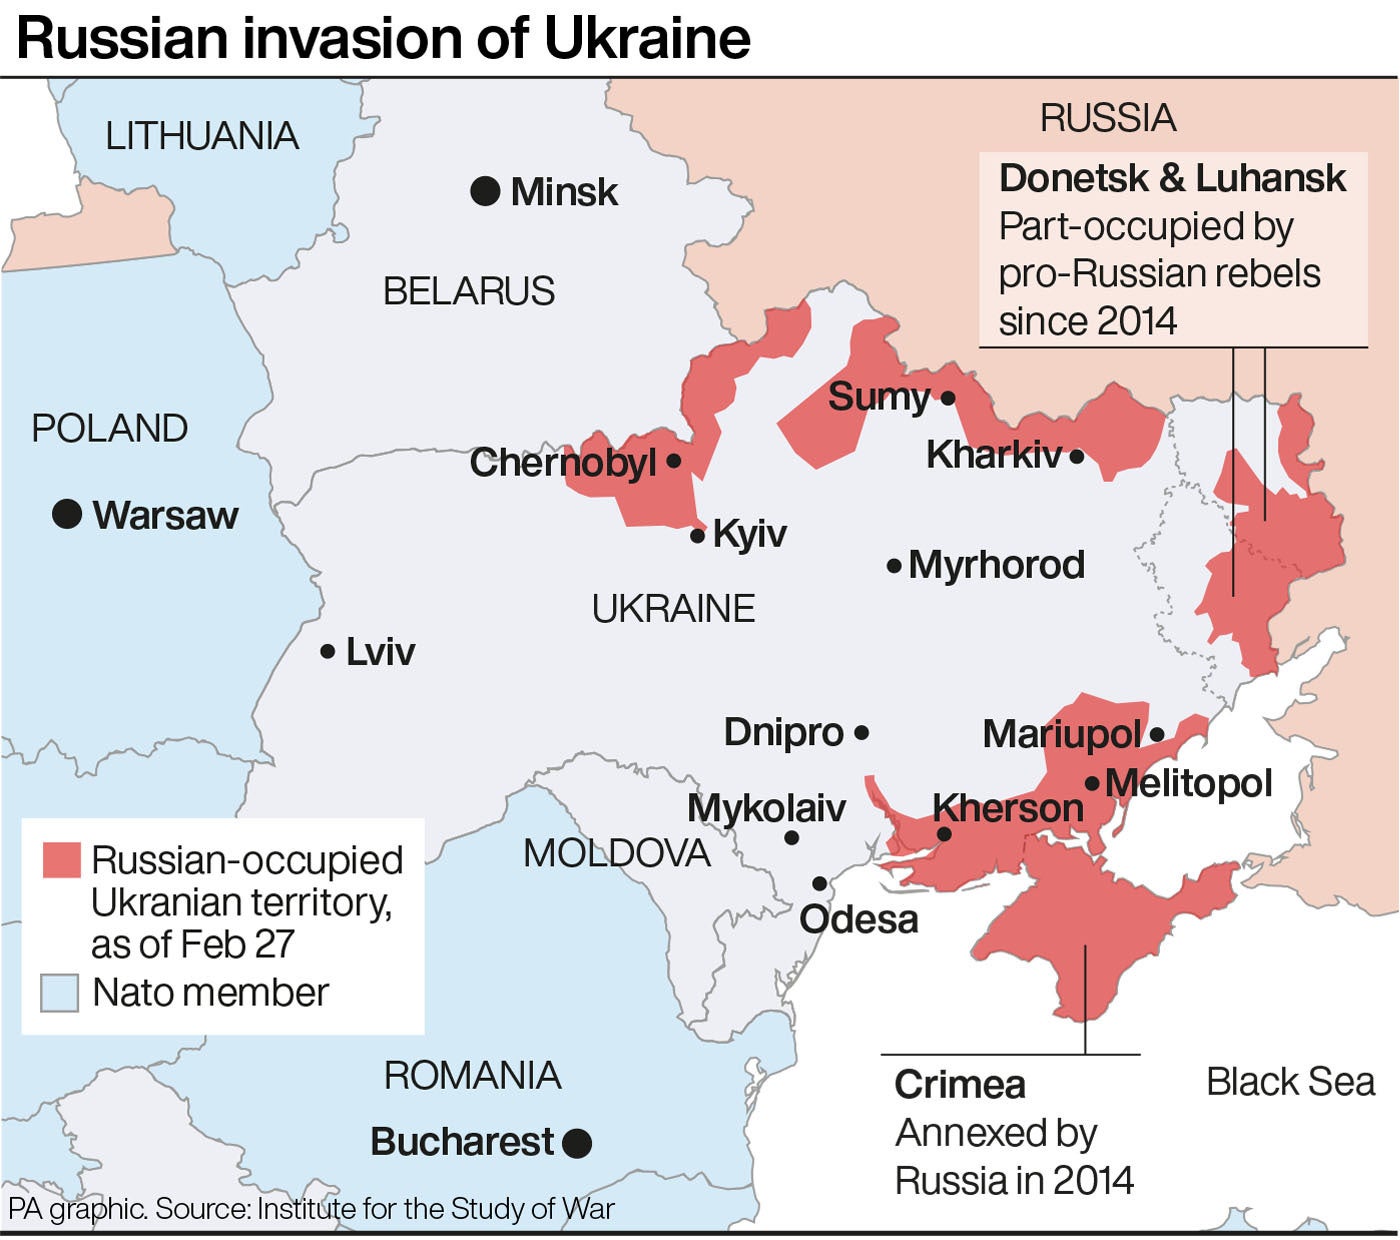 El mapa muestra la extensión de la invasión rusa en Ucrania